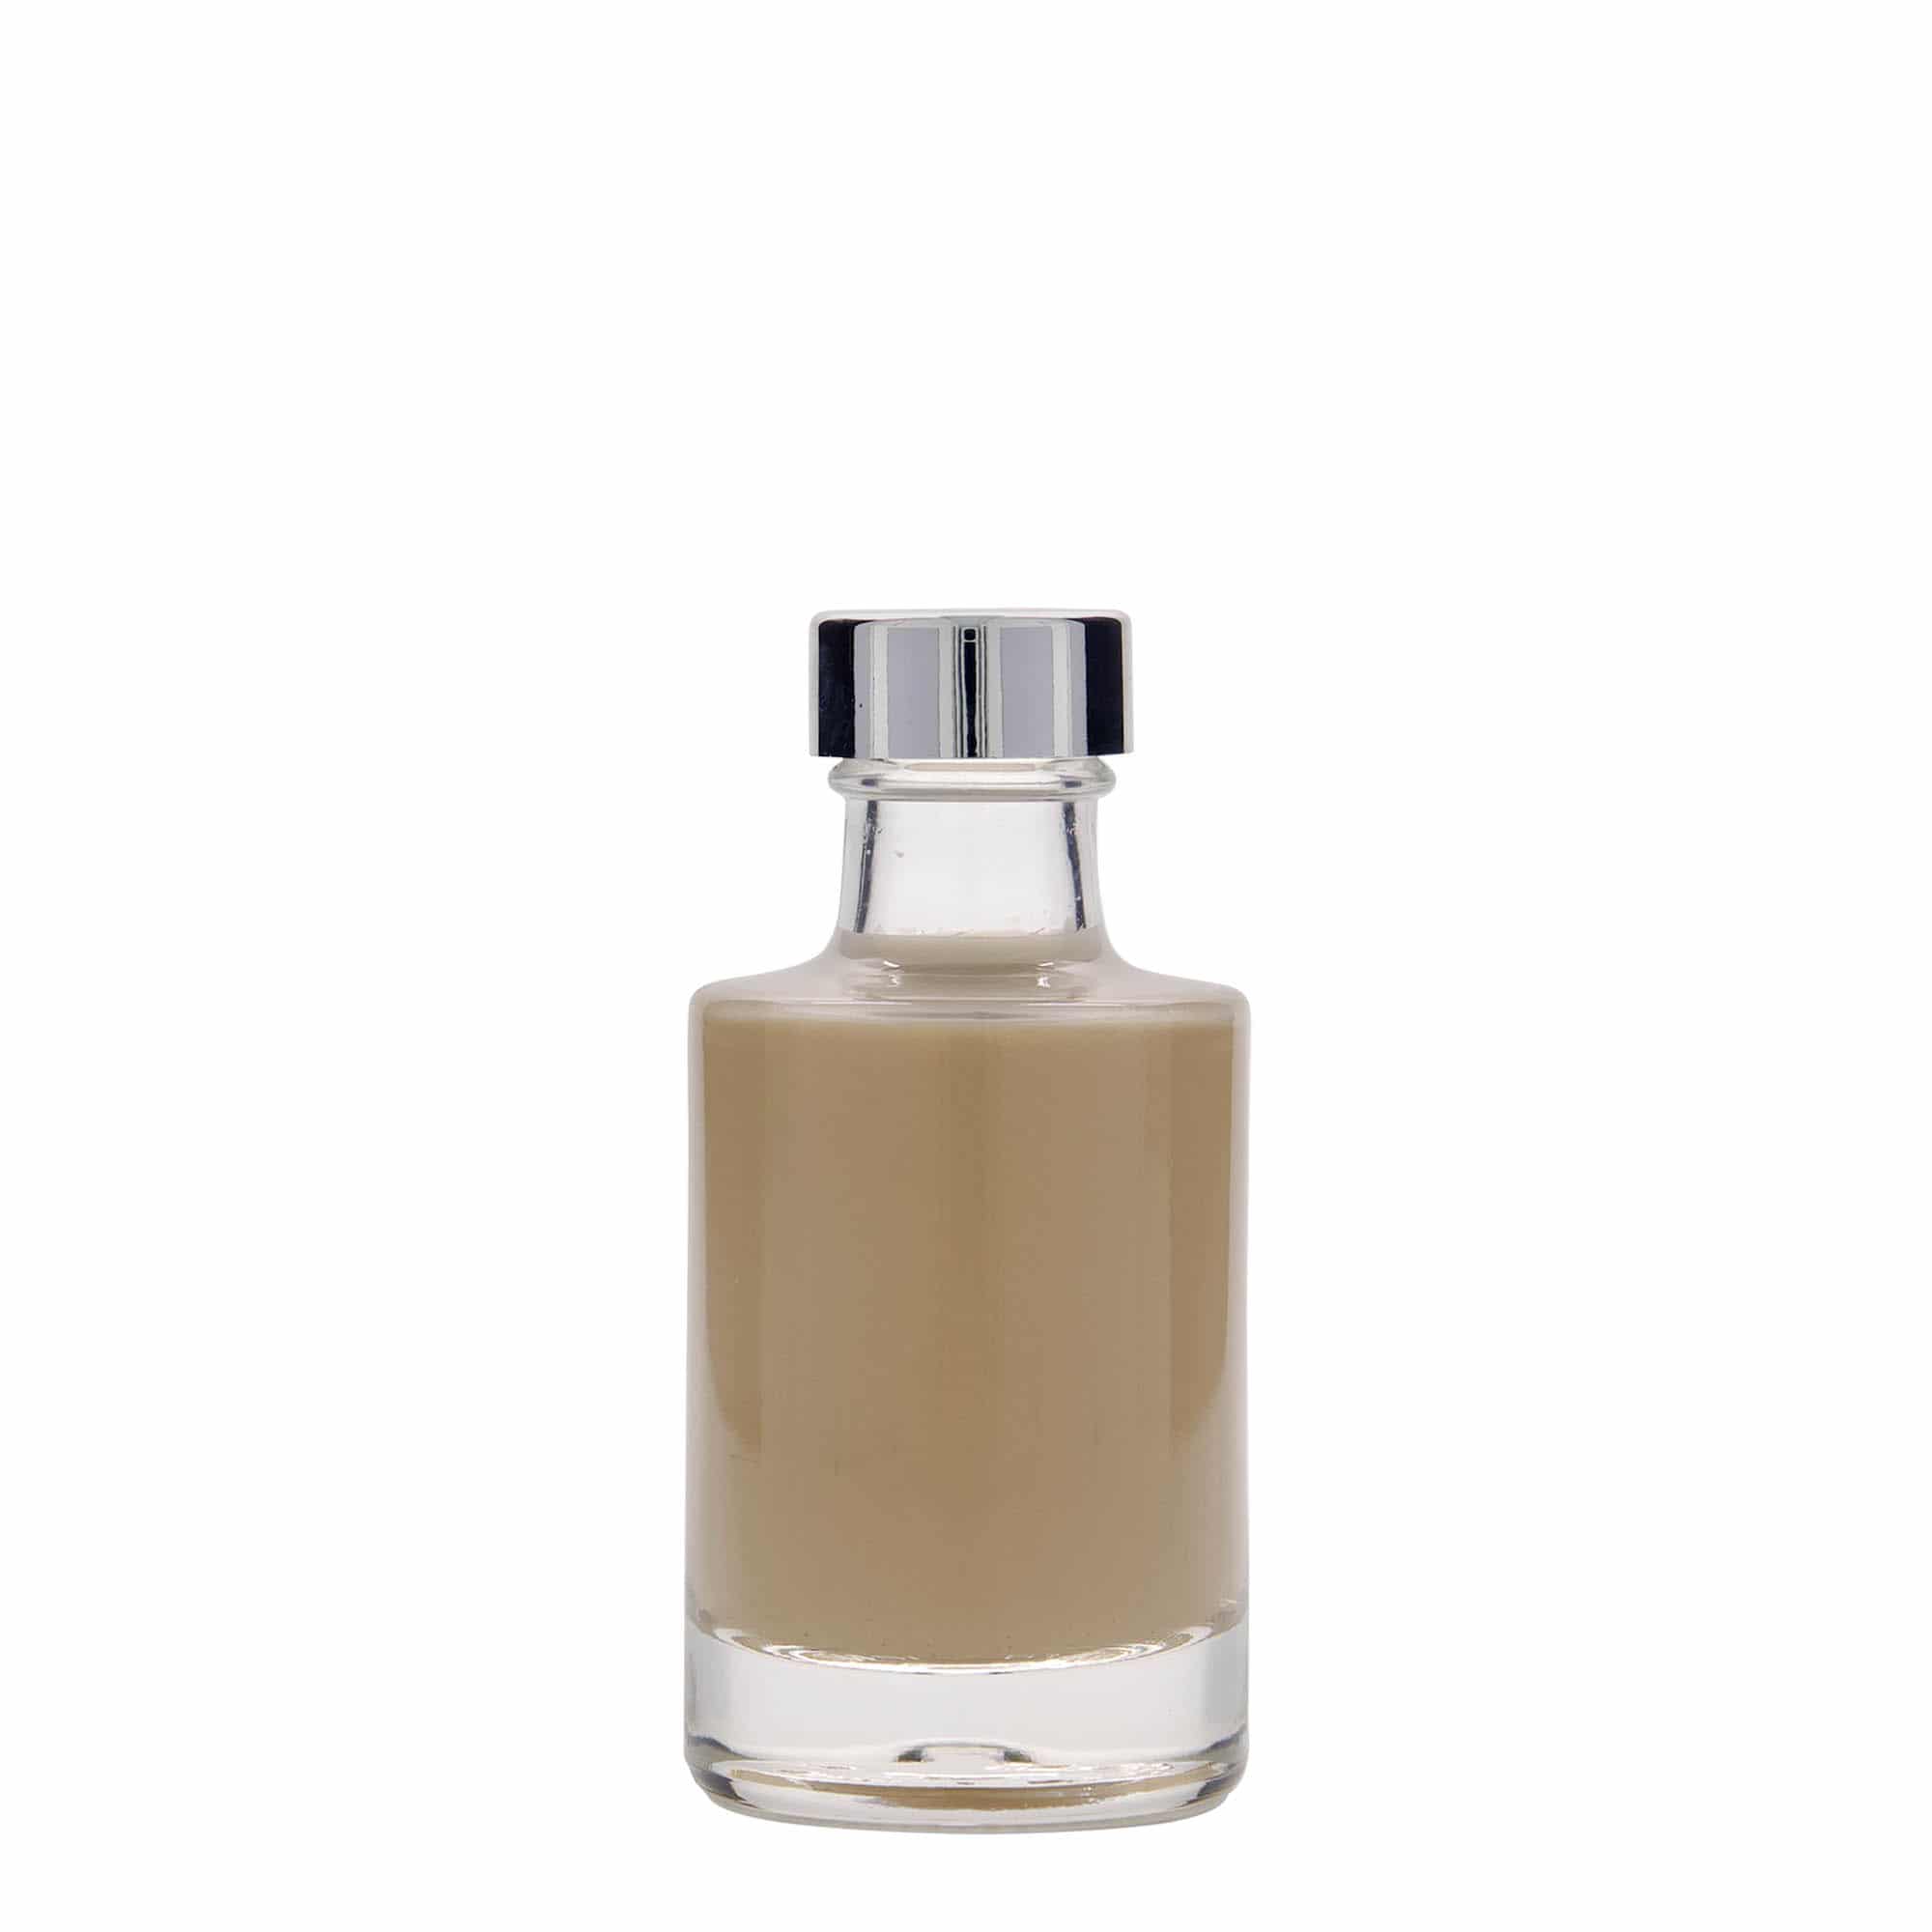 100 ml glass bottle 'Aventura', closure: GPI 28